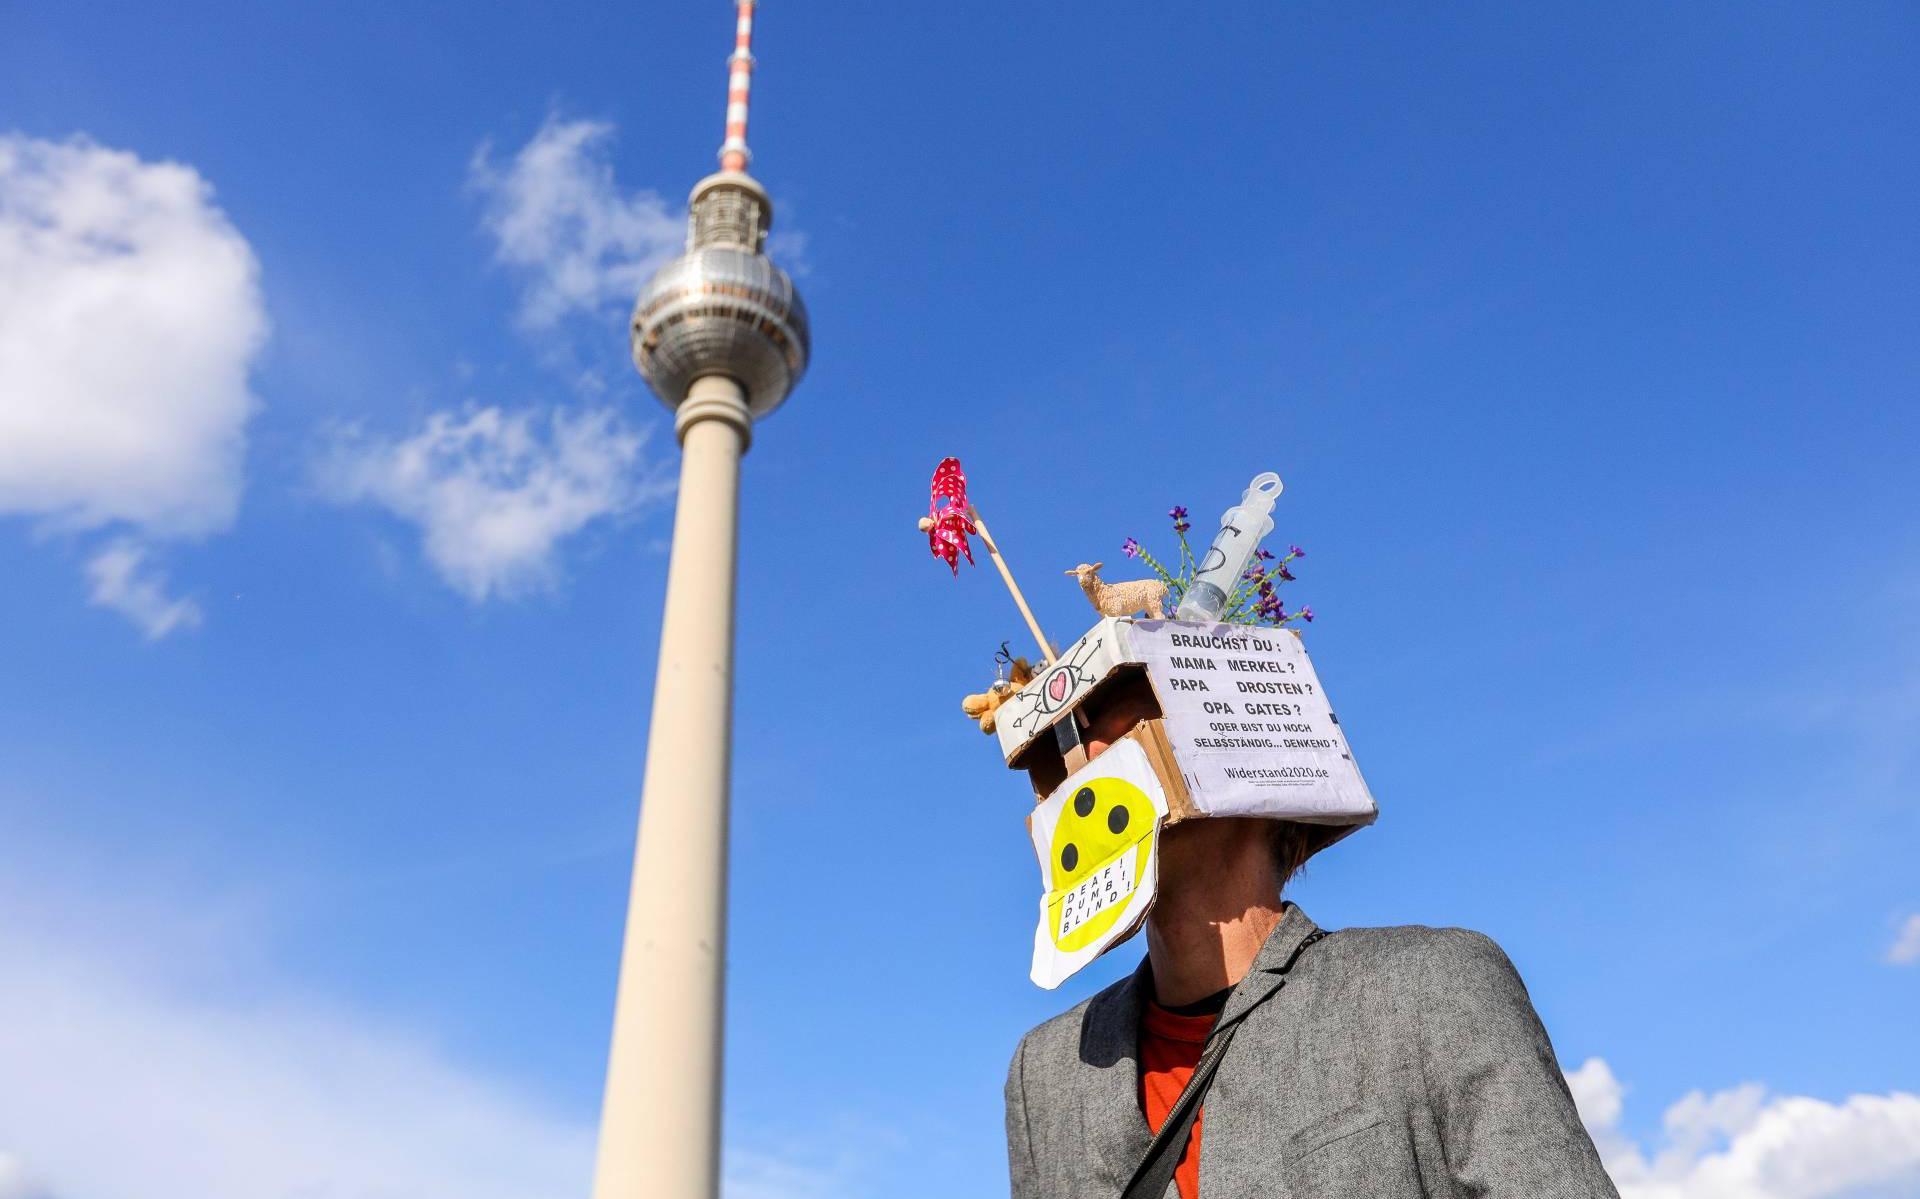 Berlijnse televisietoren weer open na coronapauze